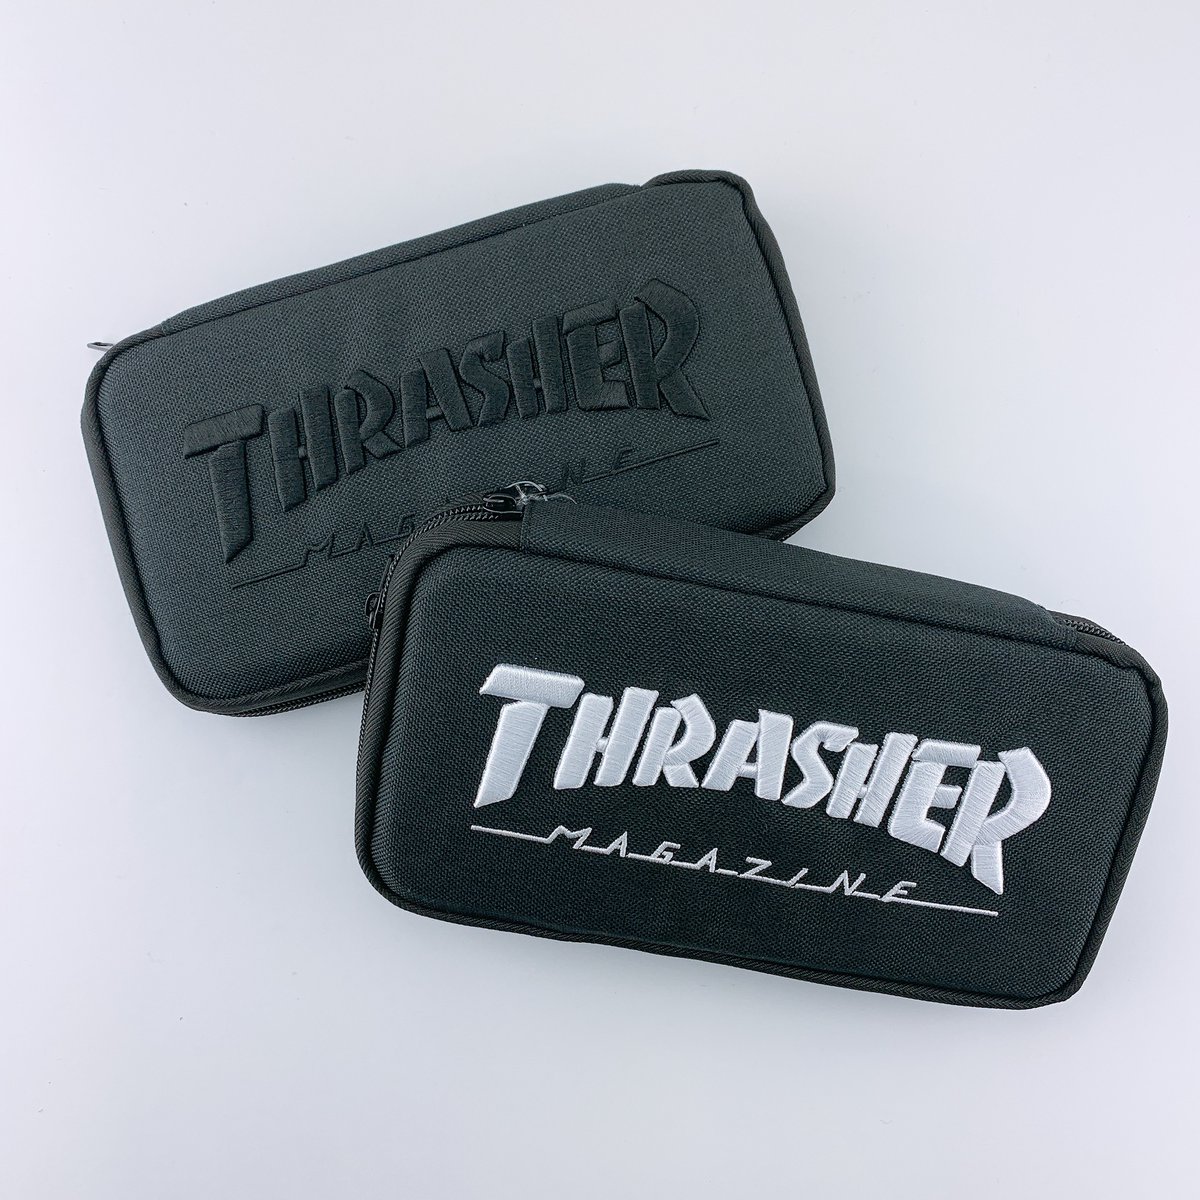 株式会社サカモト A Twitter 大人気スケーターブランド Thrasher の新商品をご紹介 使いやすい薄型のペンポーチ 薄いのにたくさんペンが入るし 何より表の立体刺繍がすごくかっこいい 来年1月発売予定なので要チェックです Thrasher スラッシャー 薄型